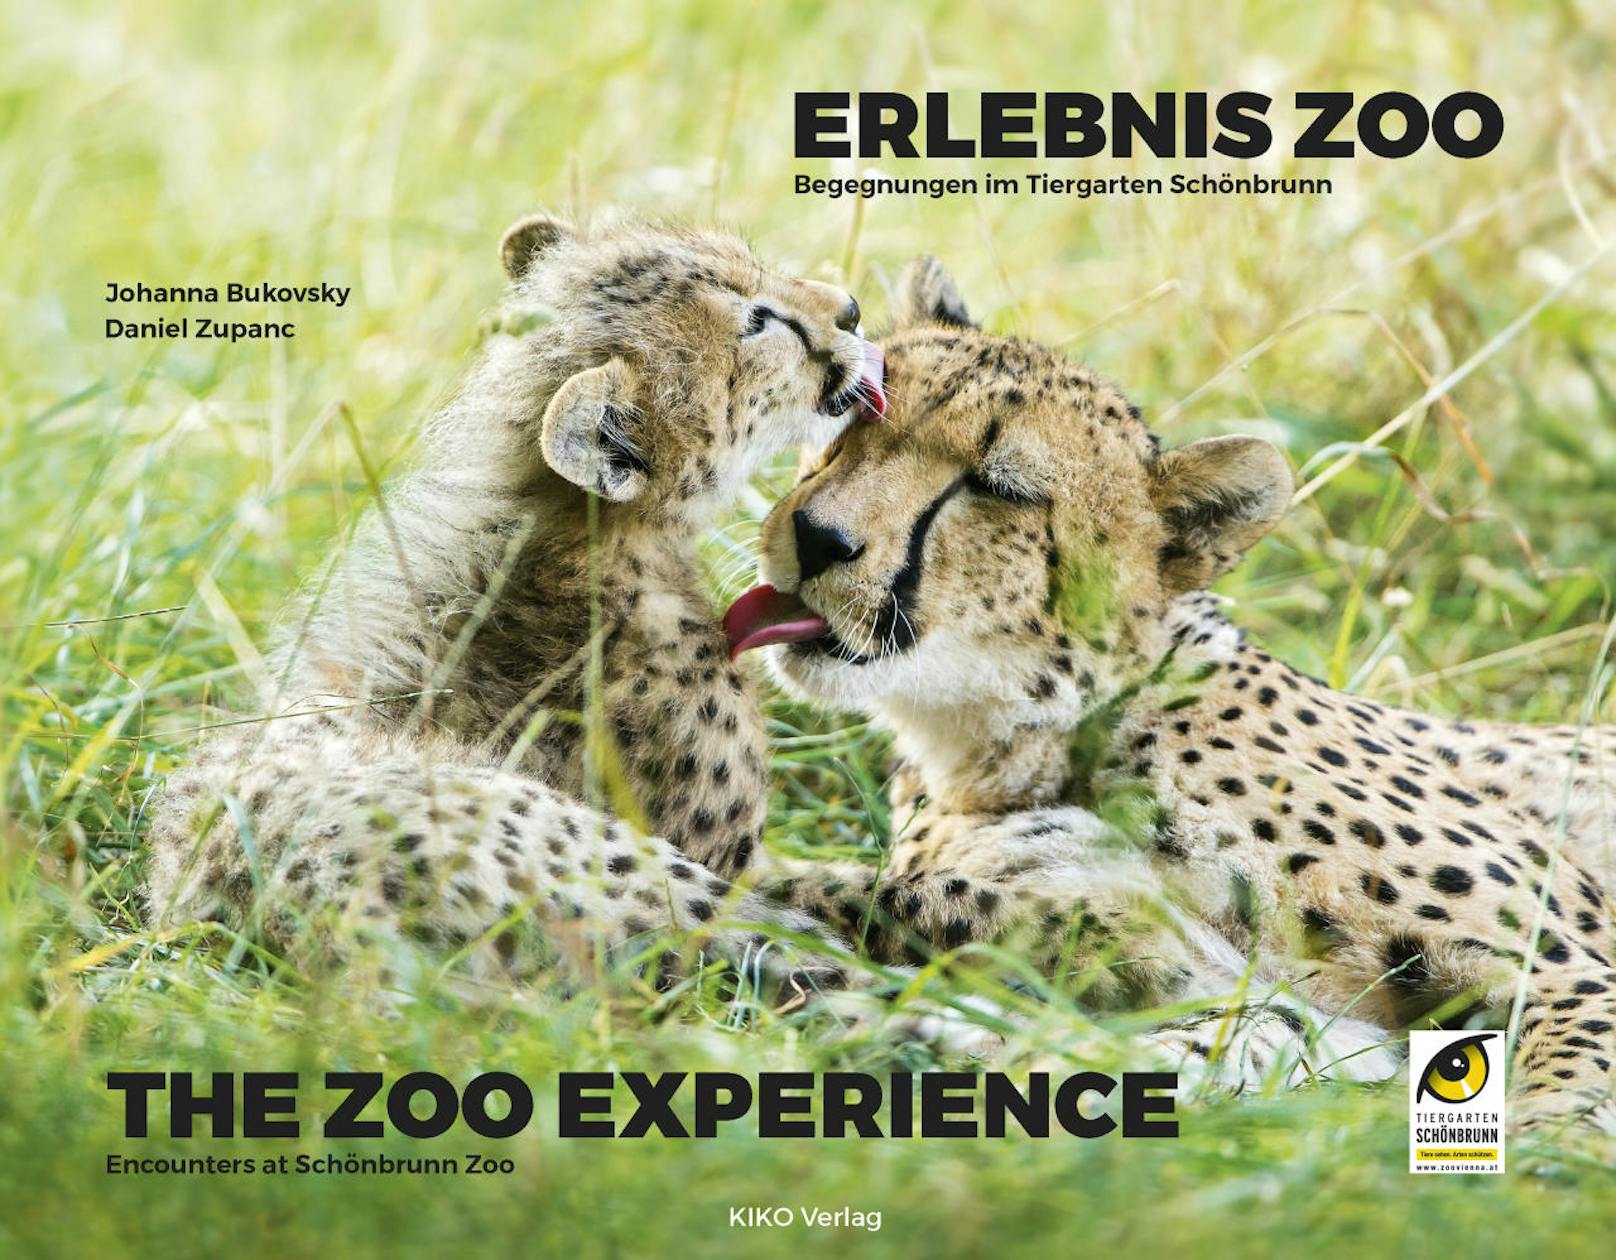 In dem Buch "Erlebnis Zoo" findet man über 300 Fotos von Zupanc.